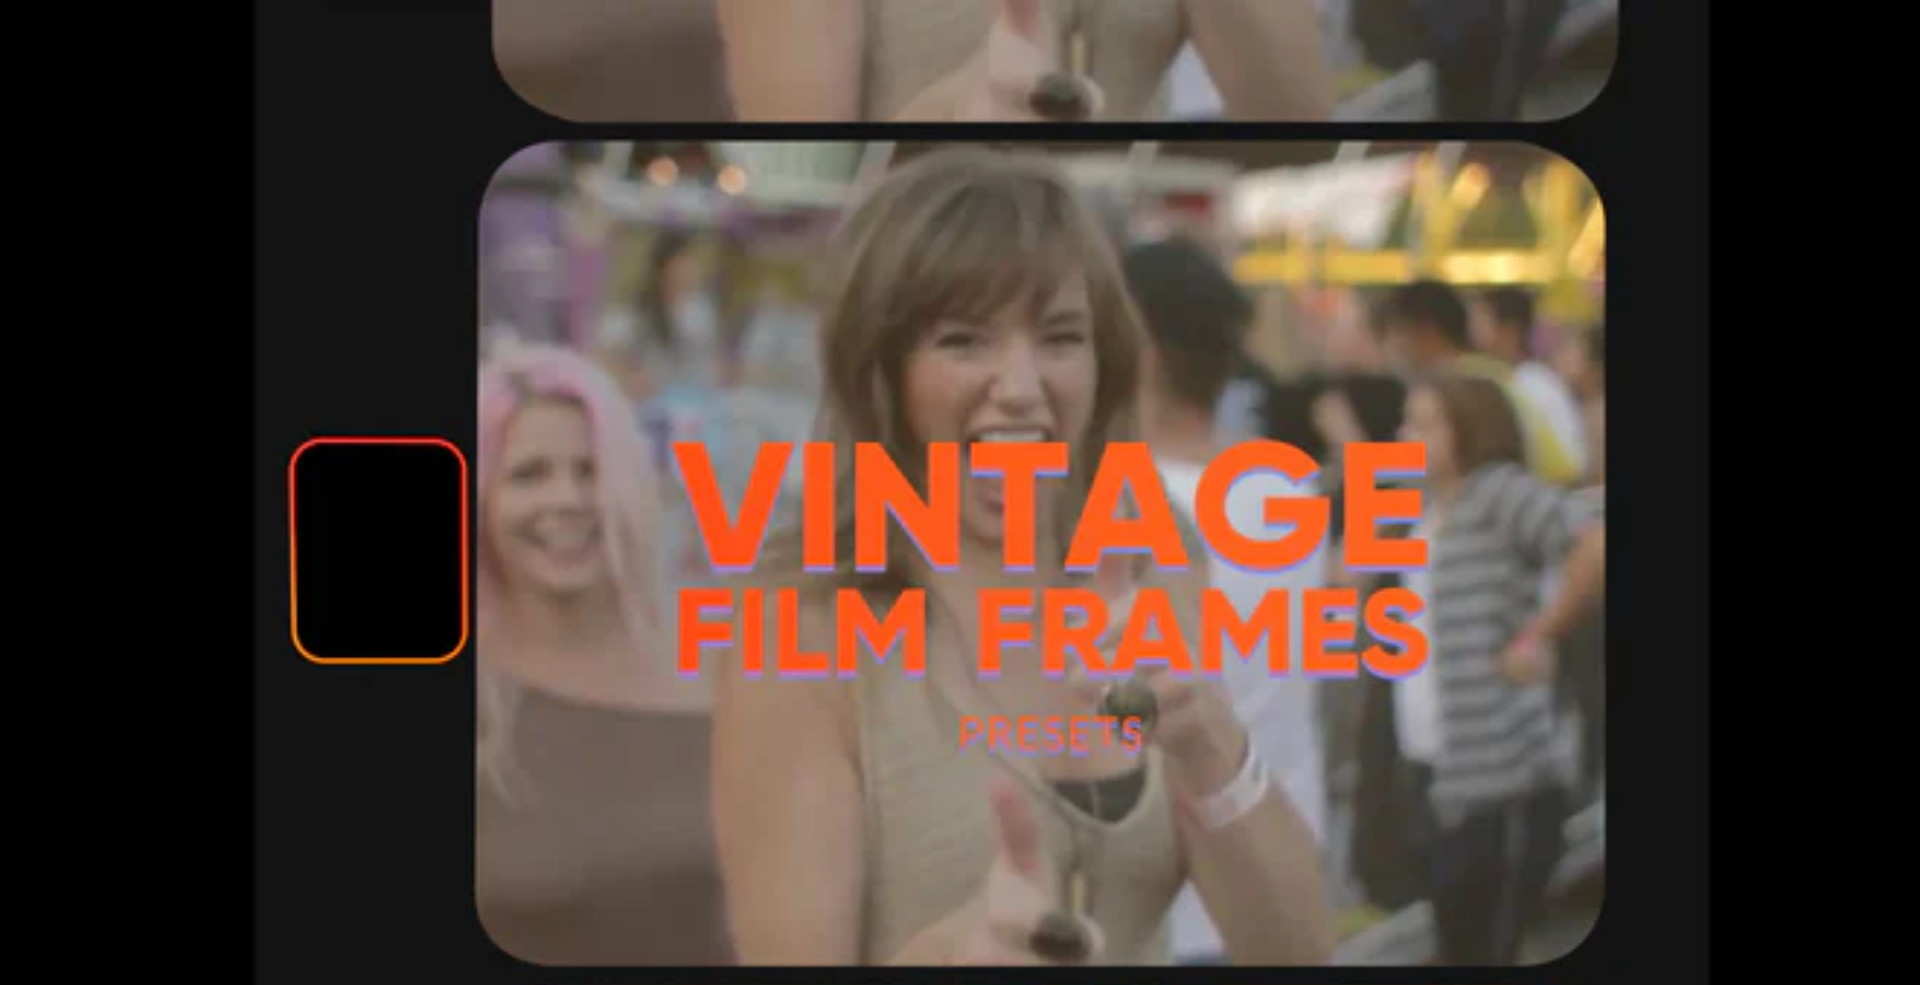 8个复古商业柯达电影帧胶片框架PR预设包带使用教程 Refreim Vintage Film Frames 插件预设 第1张